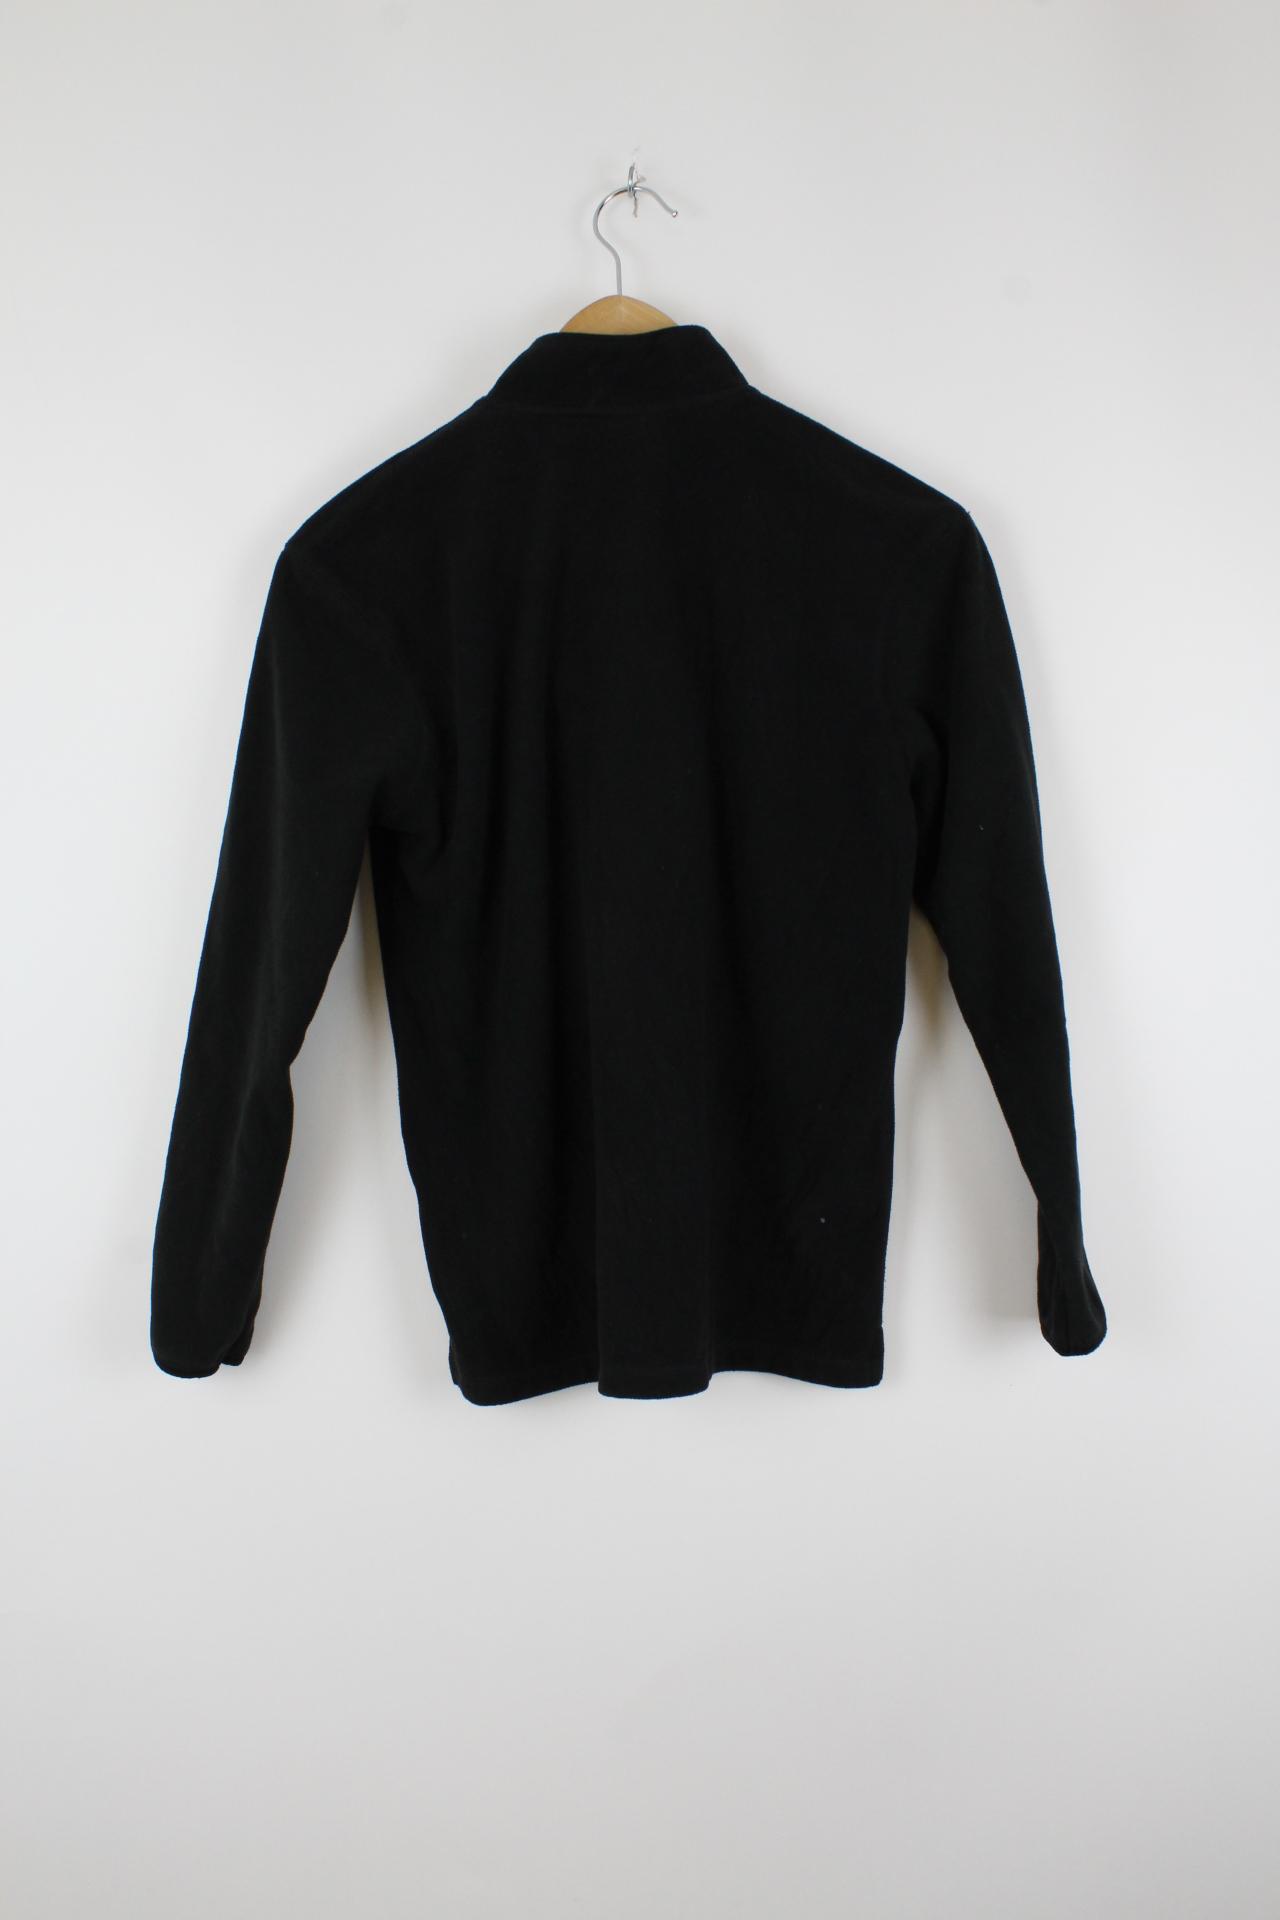 Vintage Carhartt Zip-Up Sweater Schwarz - S